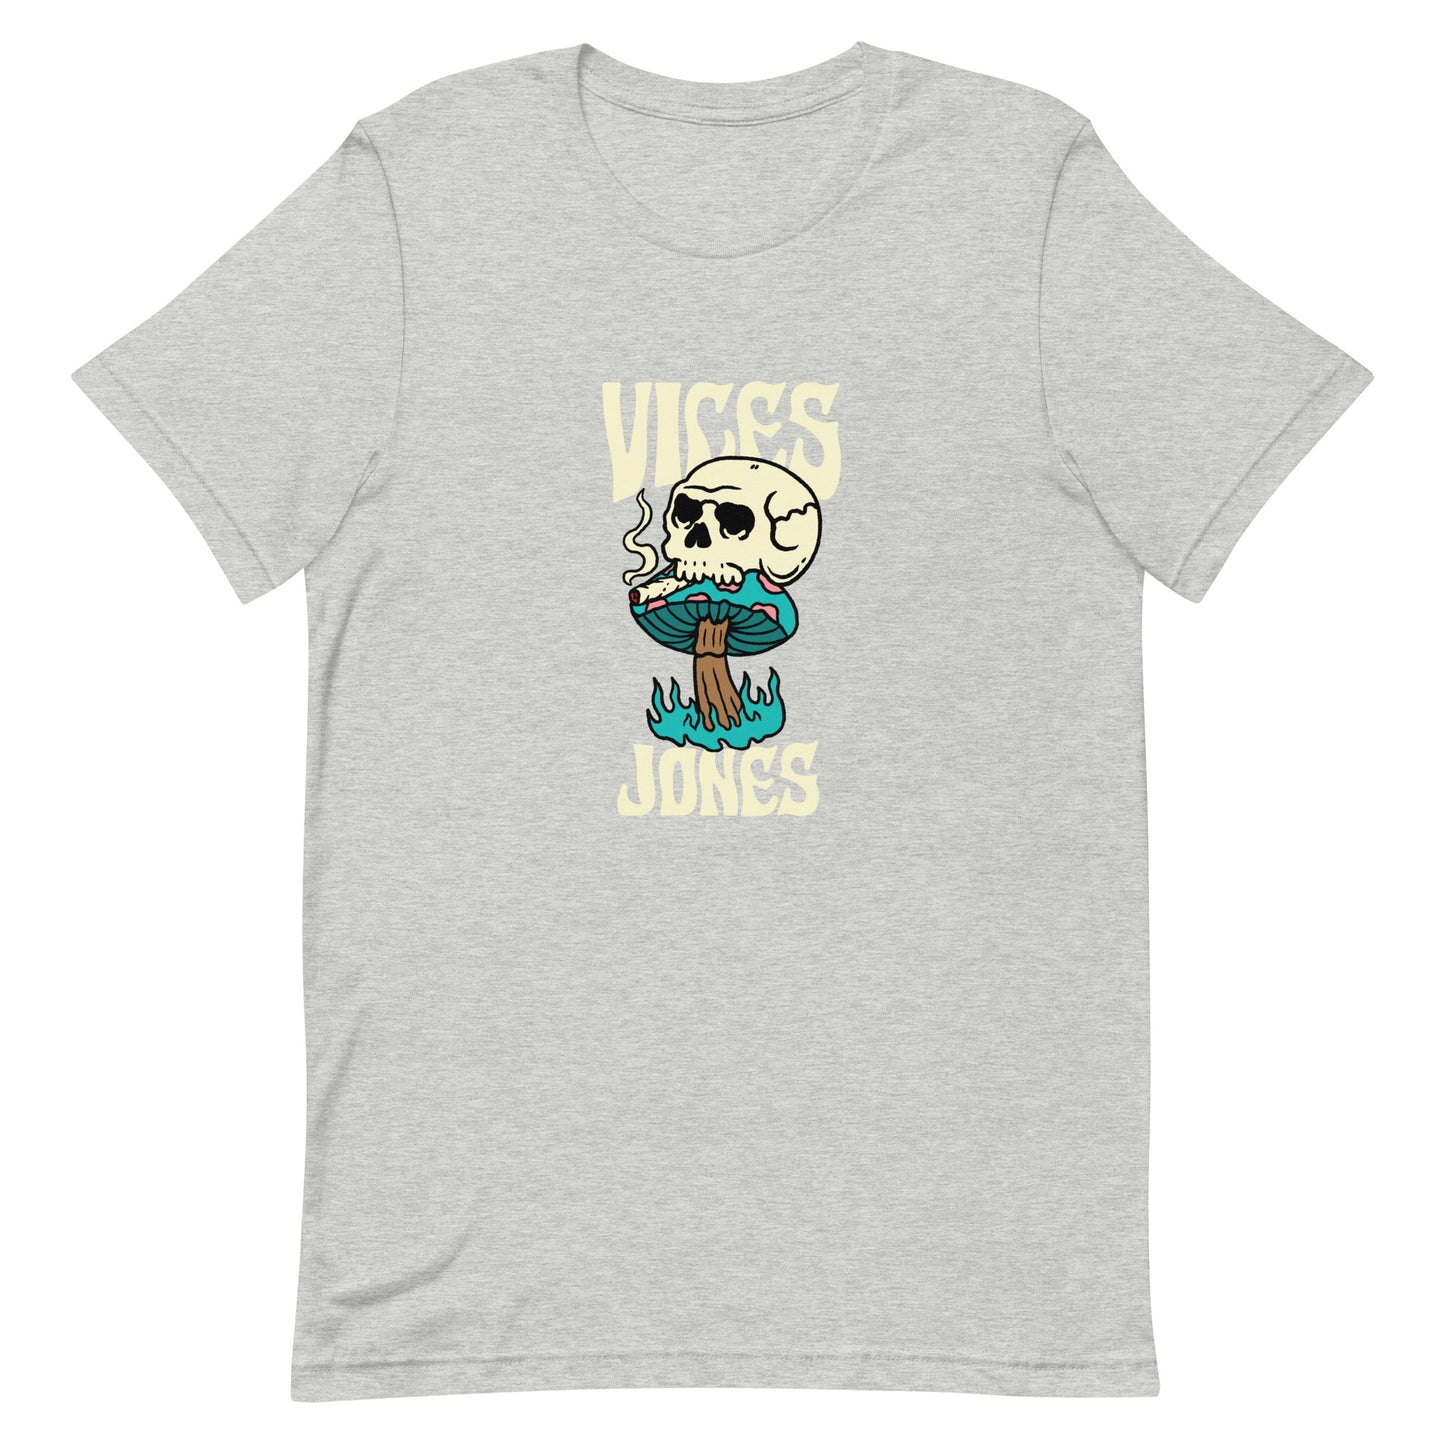 Jones - Vices T-Shirt (Unisex)